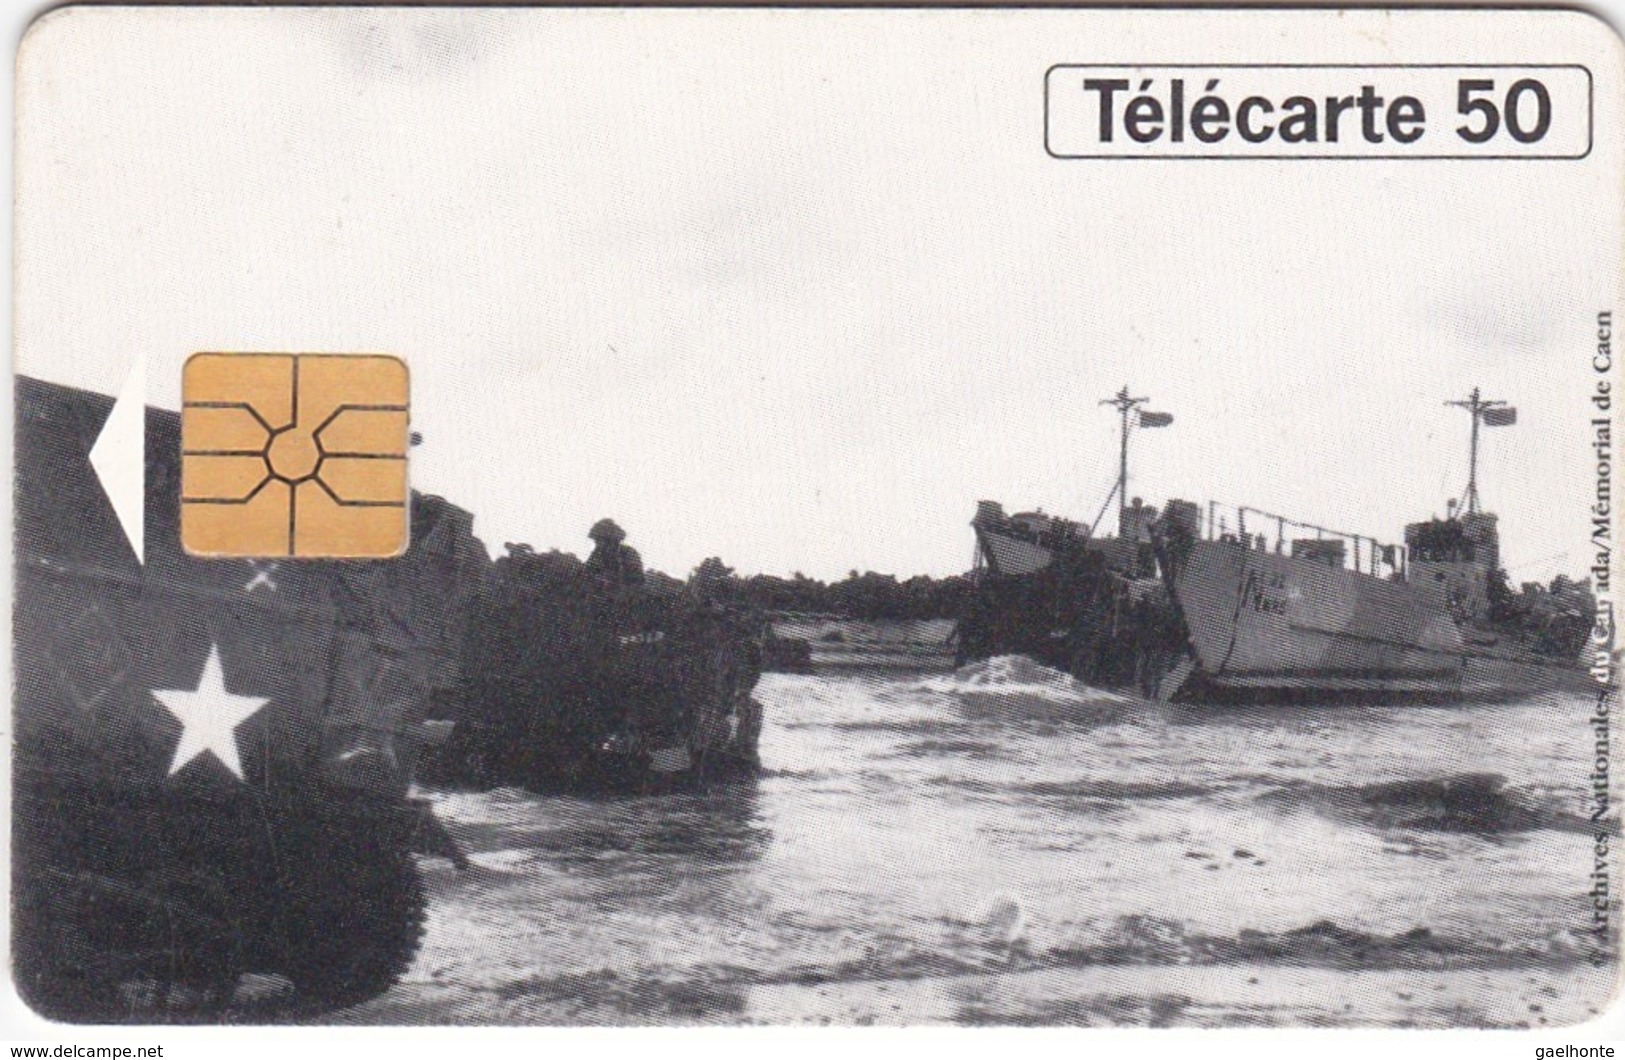 TC120 TÉLÉCARTE 50 UNITÉS - 1944-1994 - 50ème ANNIVERSAIRE DES DEBARQUEMENTS... - BERNIERES SUR MER 06 JUIN 1944 - Army